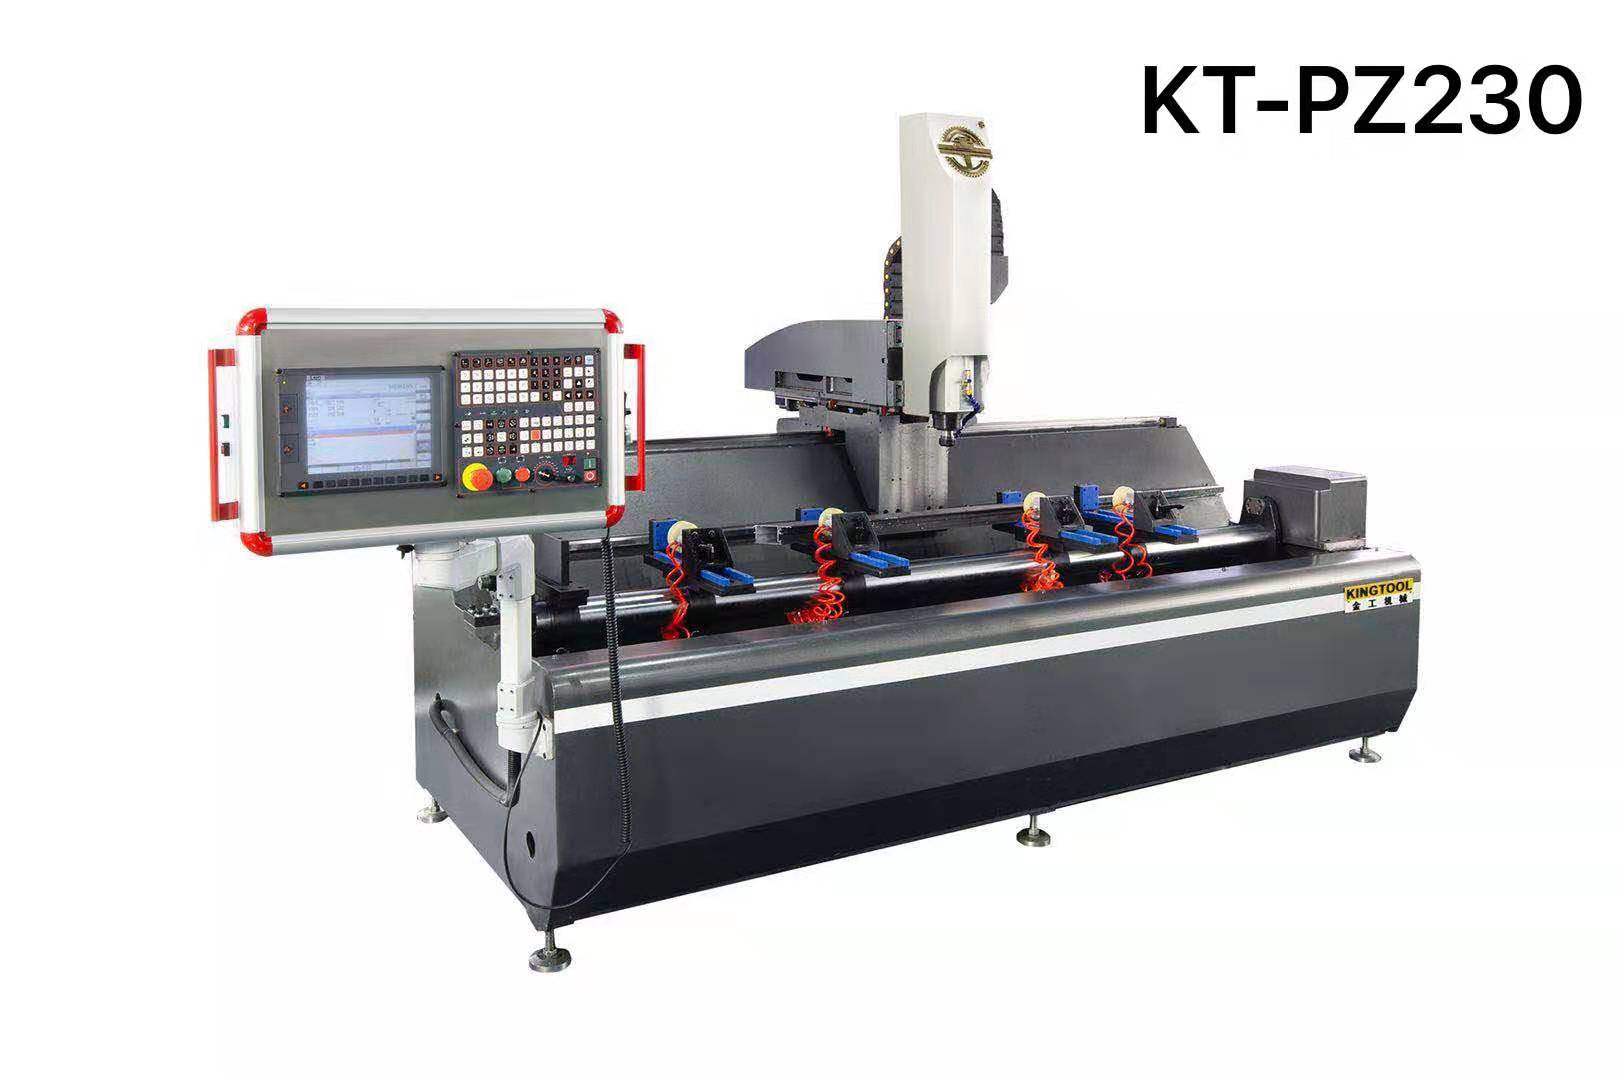 kingtool aluminium machinery Array image41